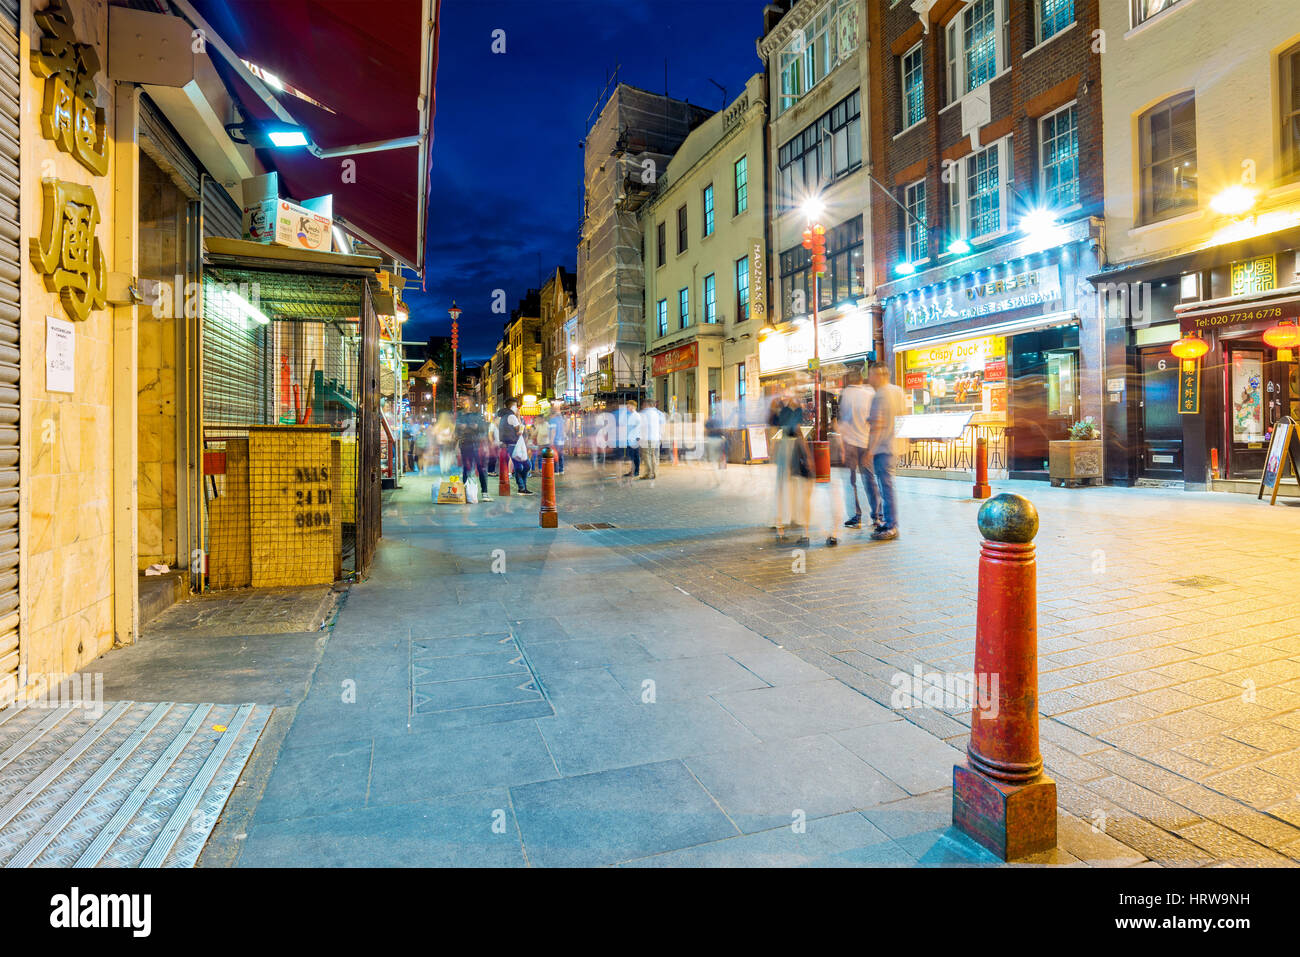 Londres - Septembre 08 : vue de la nuit de la célèbre Gerrard Street qui est la rue principale du quartier chinois de Londres dans la nuit du 8 septembre, 2016 dans londo Banque D'Images